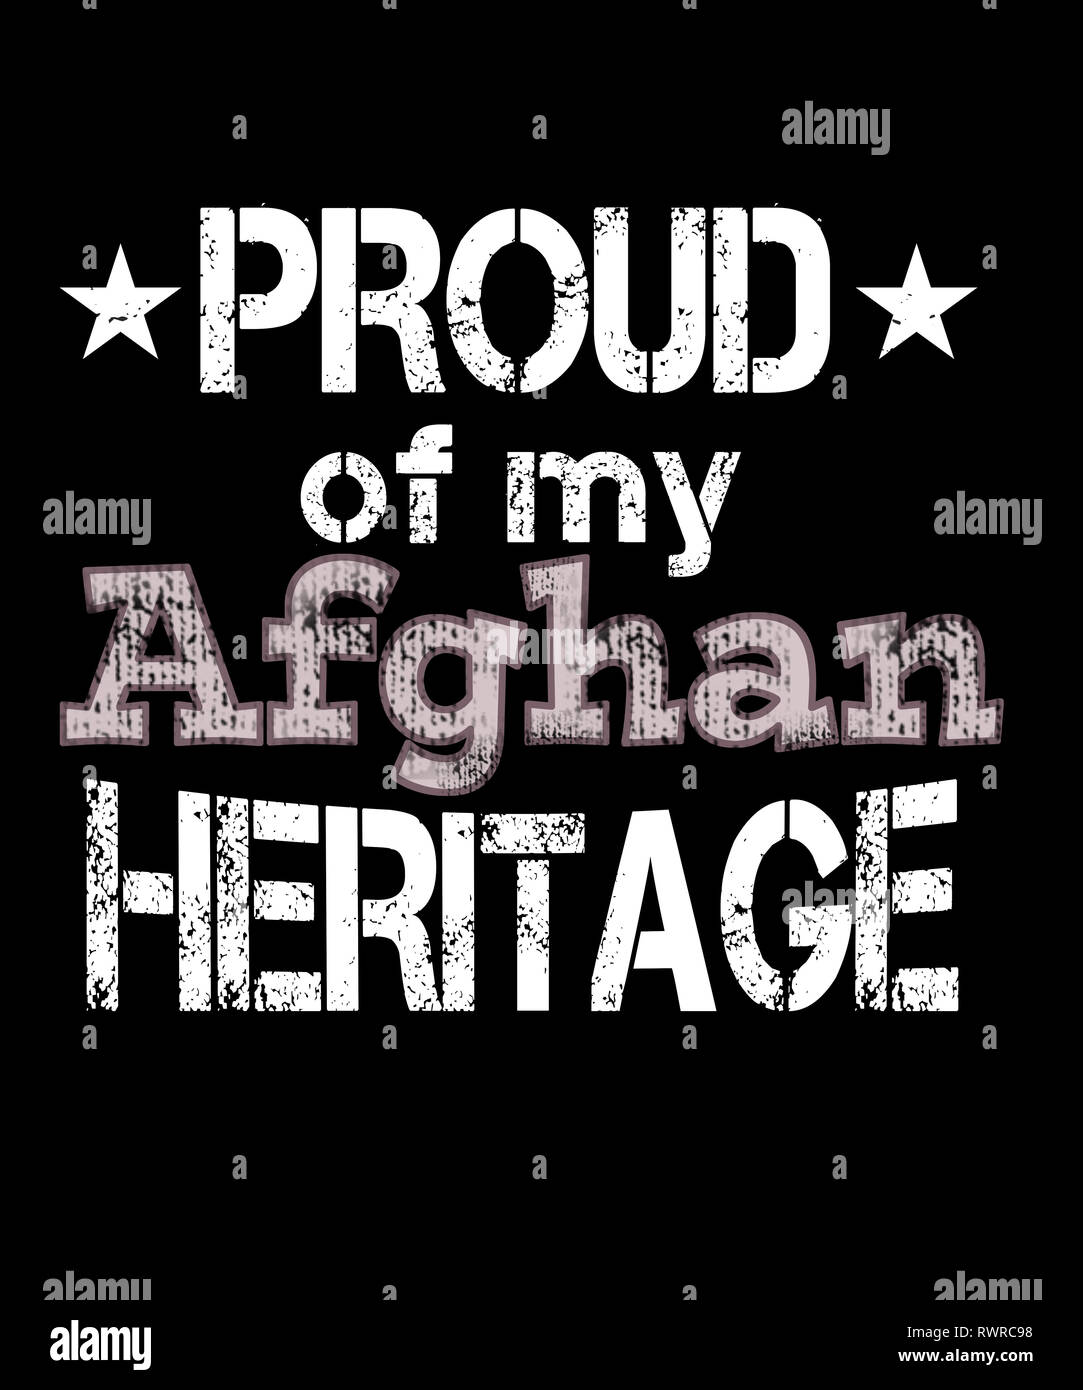 Orgoglioso del mio patrimonio culturale afghano grunge stile vintage graphic design su uno sfondo nero. Foto Stock